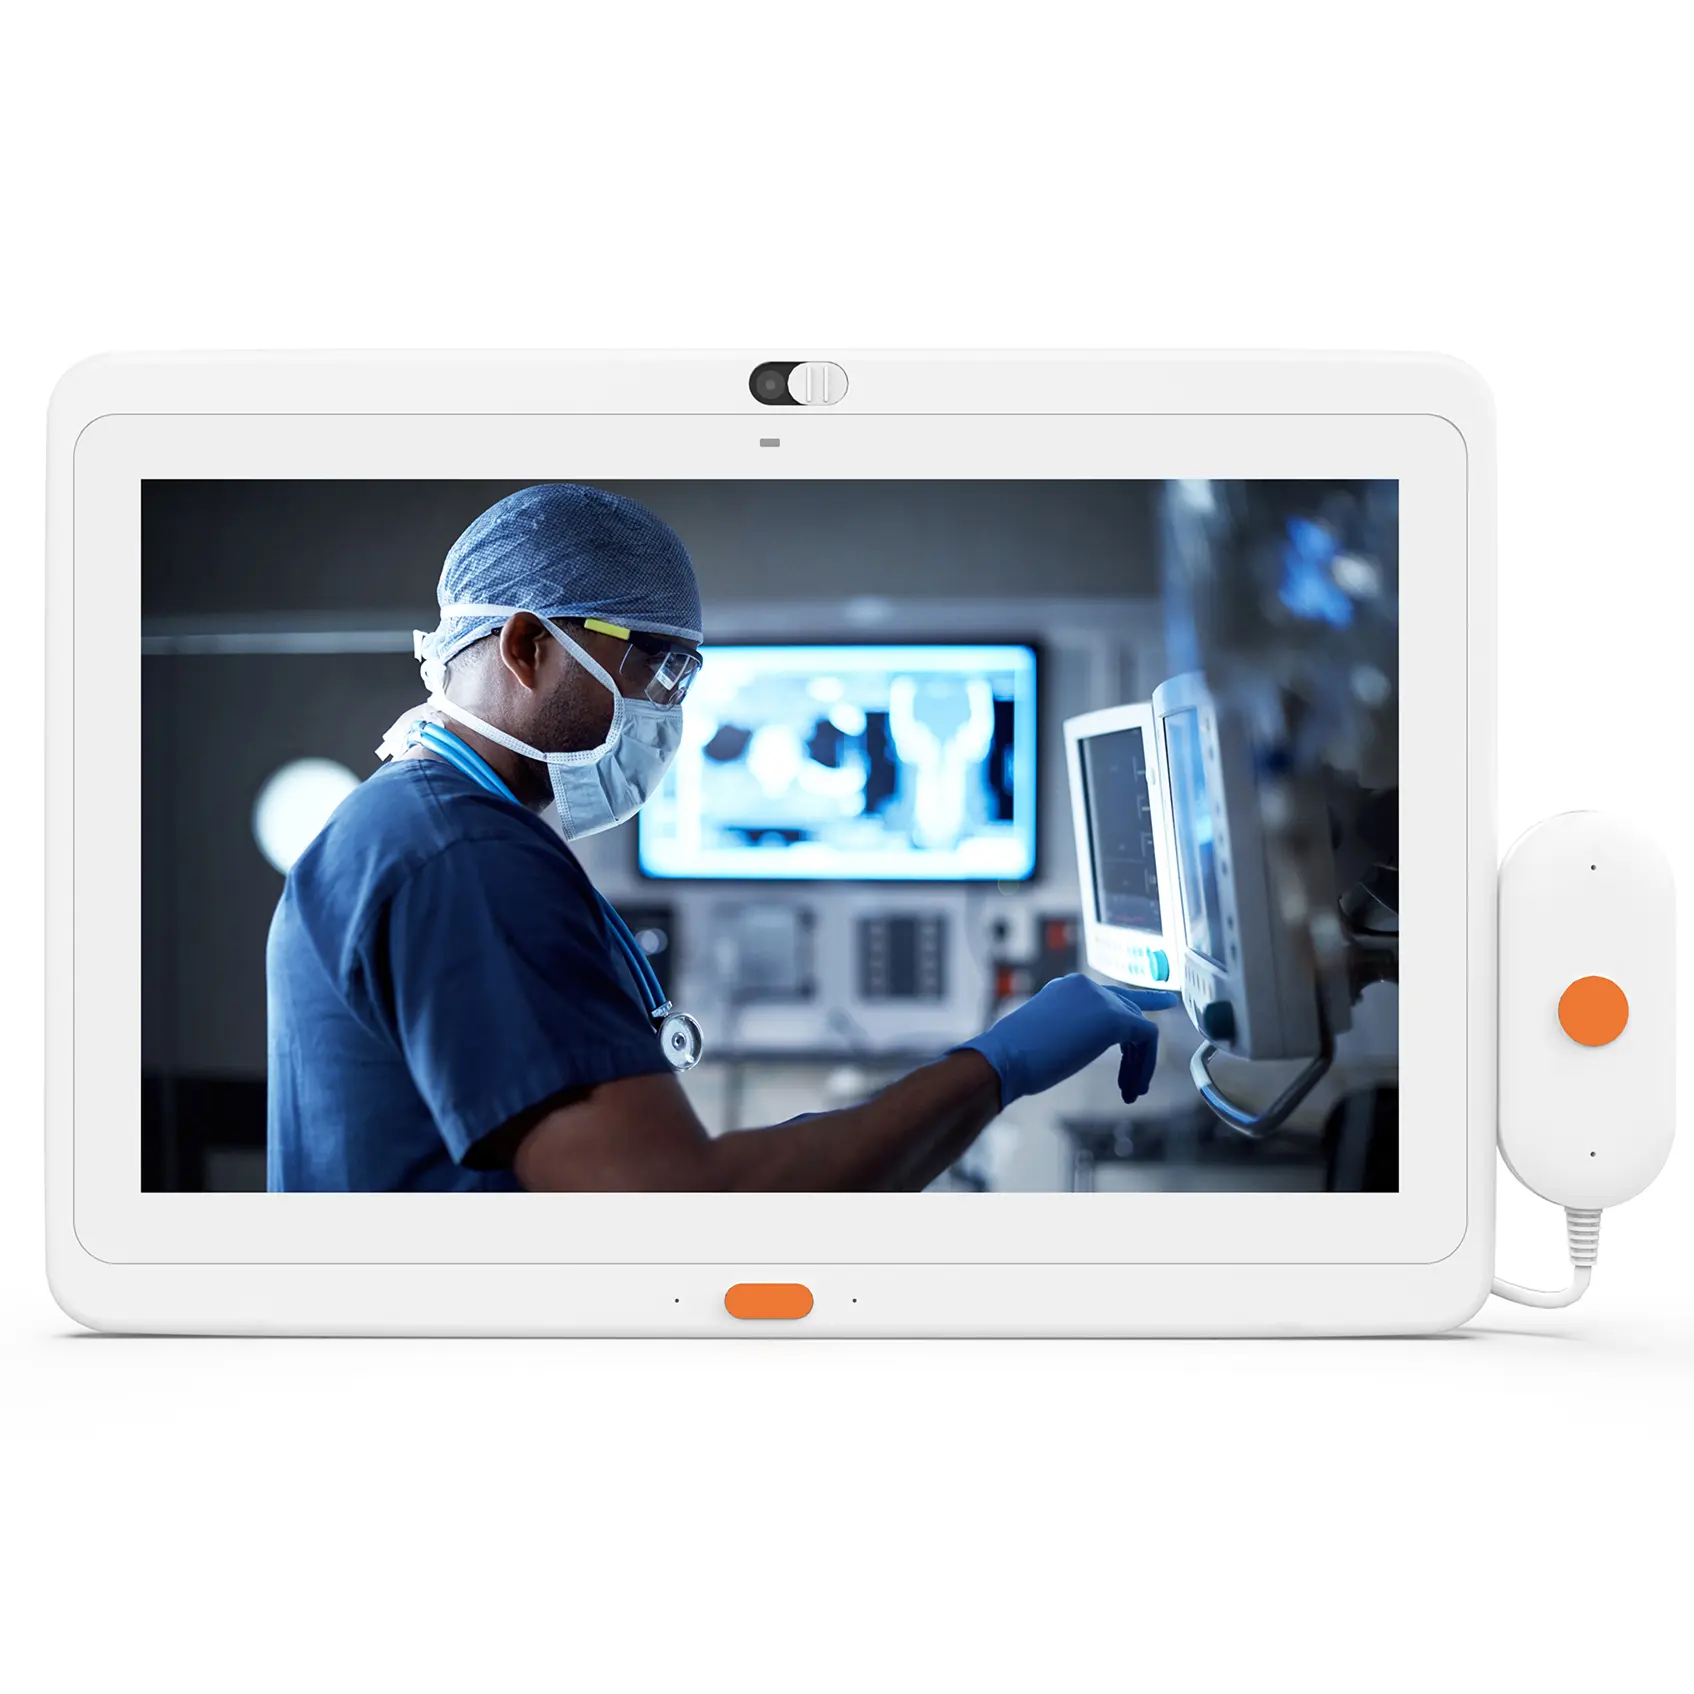 Rk3399 tablet 13.3 inç android 16GB bellek dokunmatik ekran pc android tabletler tıbbi tablet